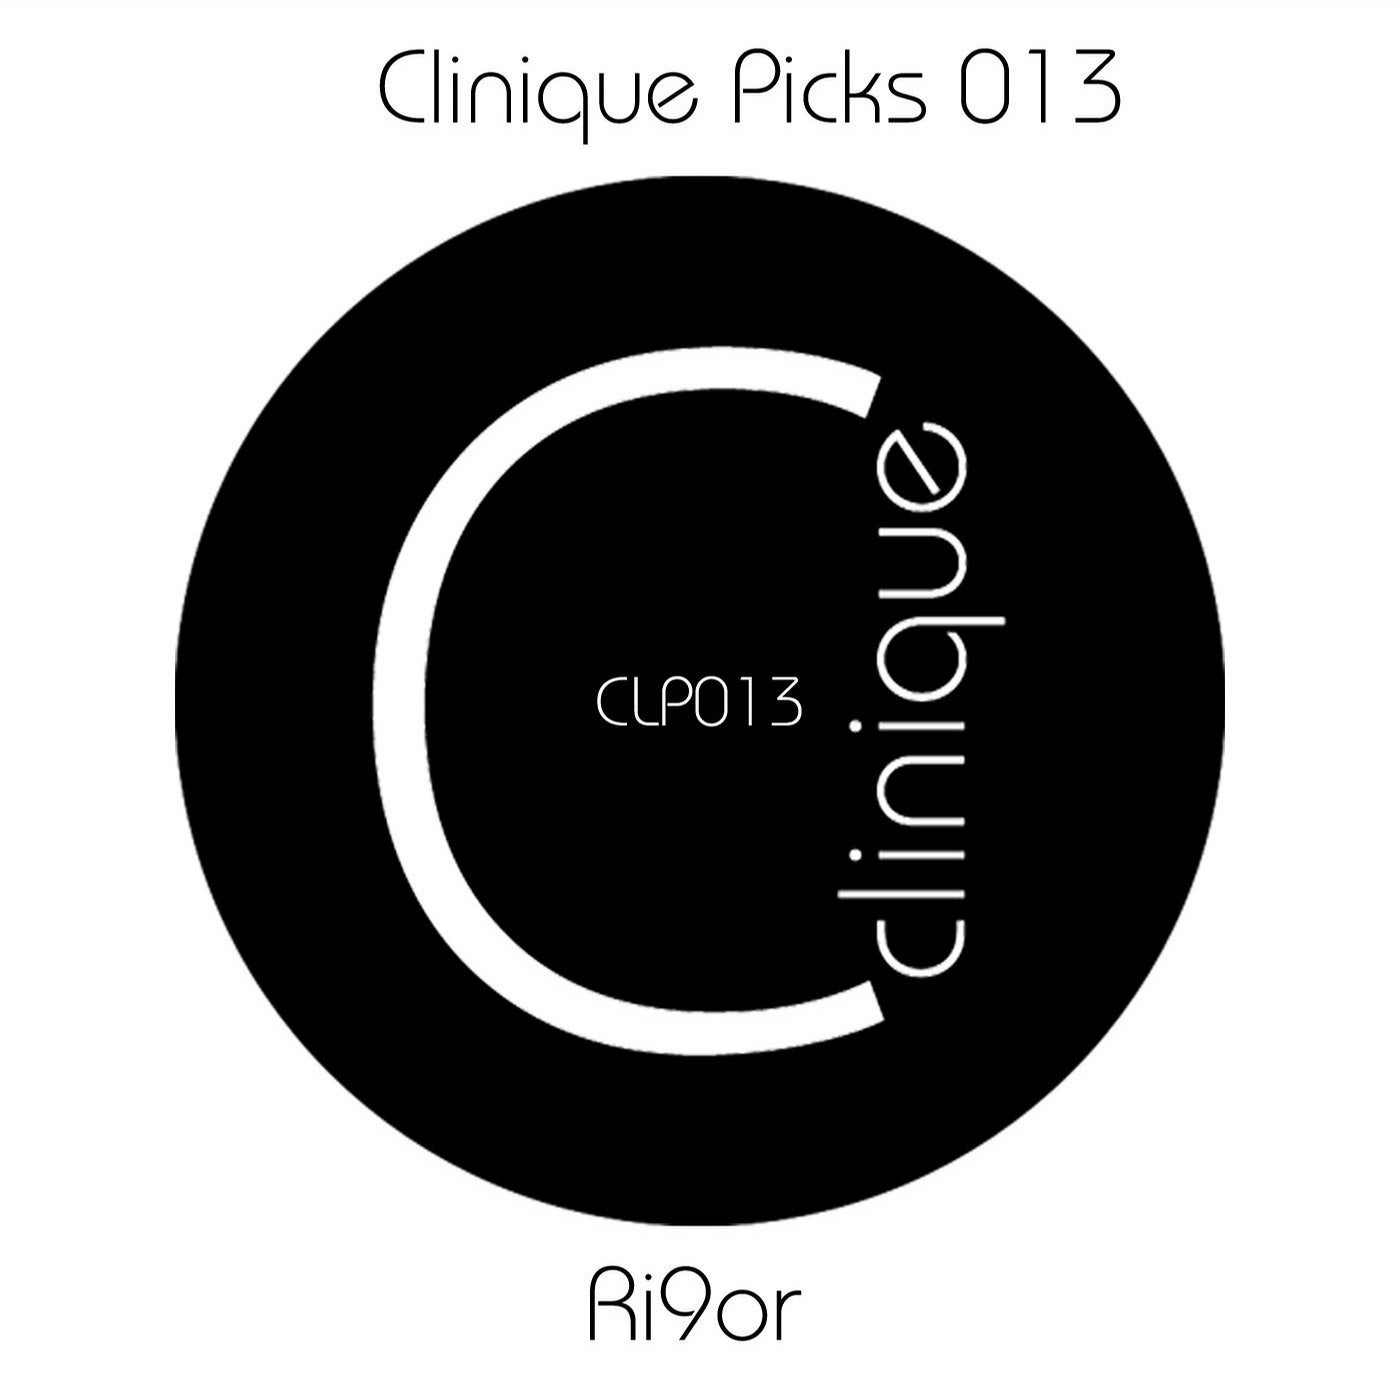 Clinique Picks 013